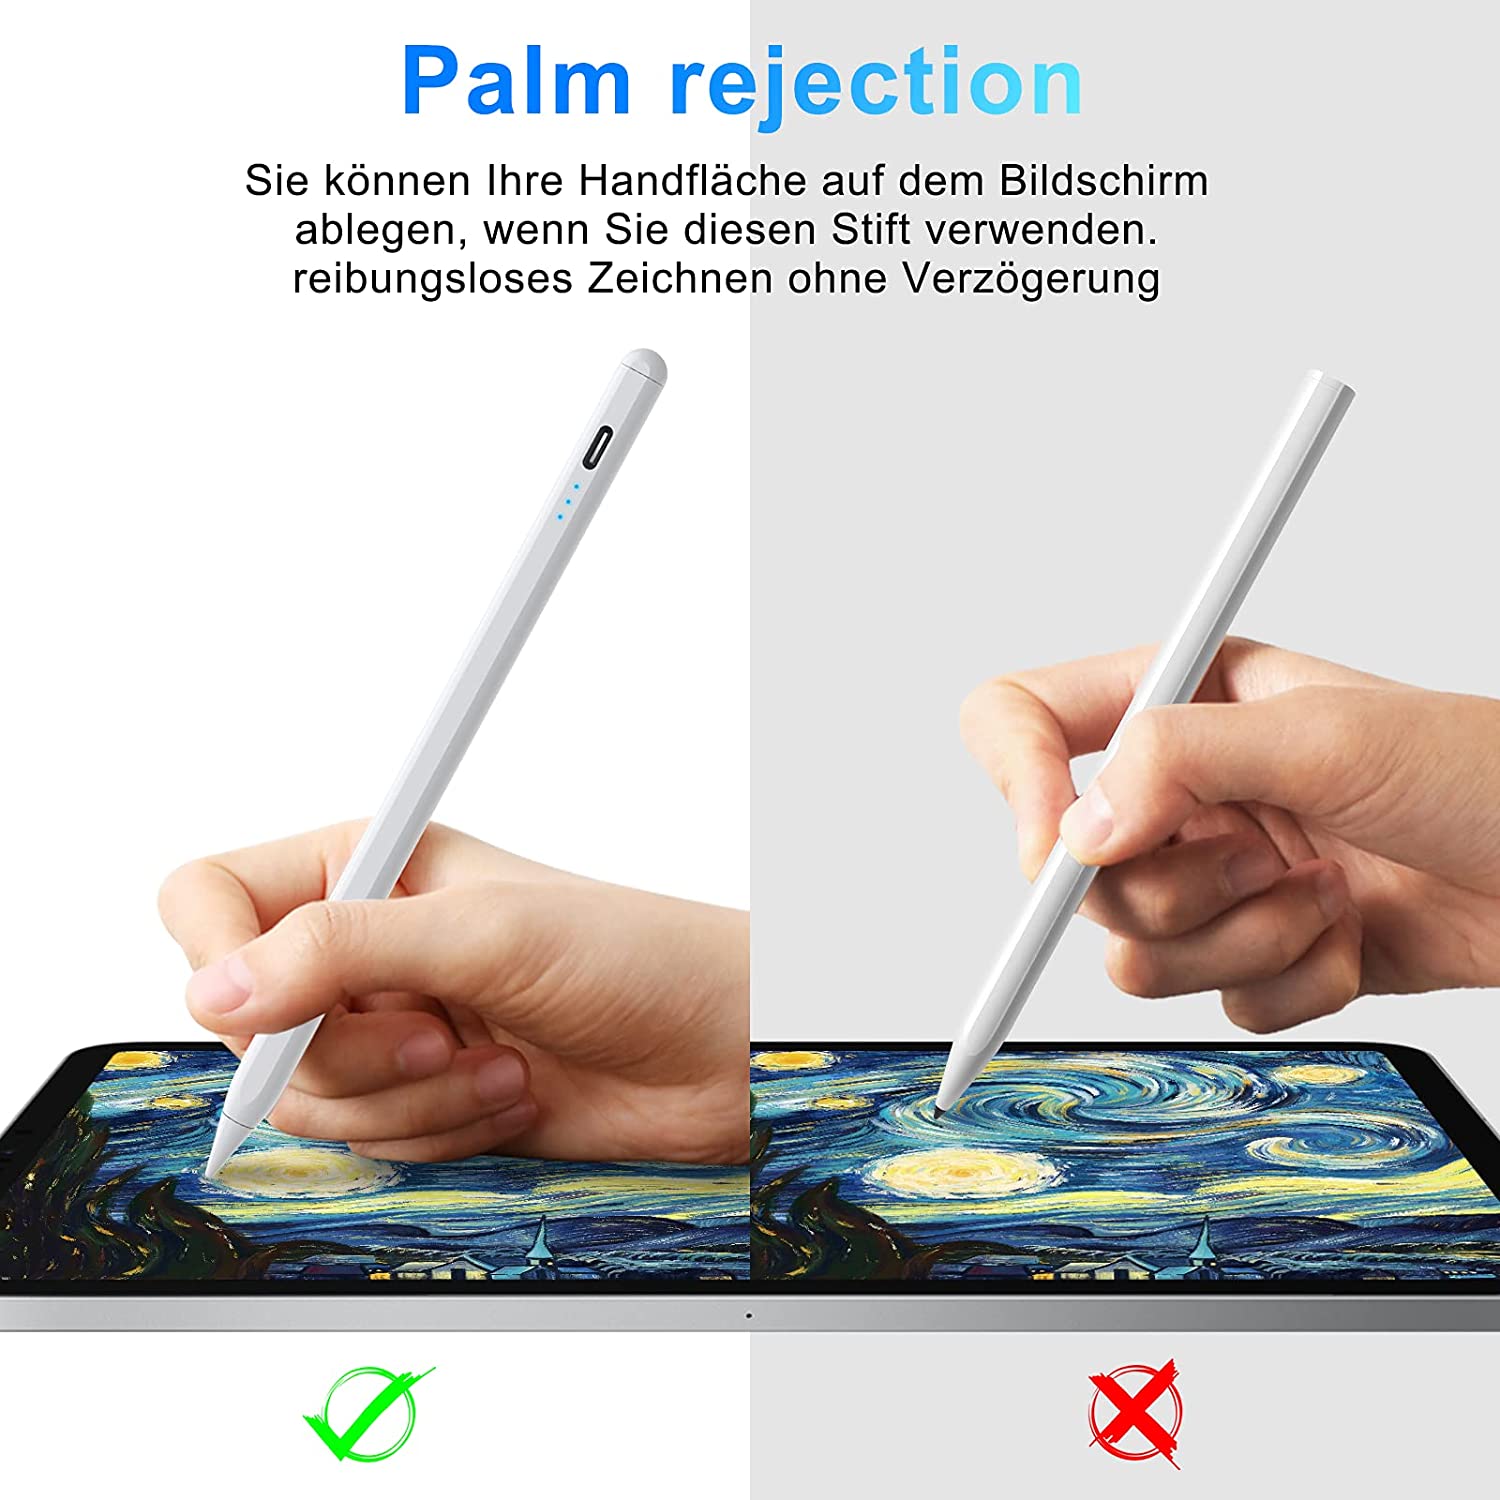 iPhone Samsung Huawei Lenovo Xiaomi Tablet für sämtliche Touchscreens-Weiß ipad Mini WOEOA Stift für Tablet ipad Stift Empfindlicher Pencil mit Handflächenfeste Handschuhe kompatibel für ipad air 